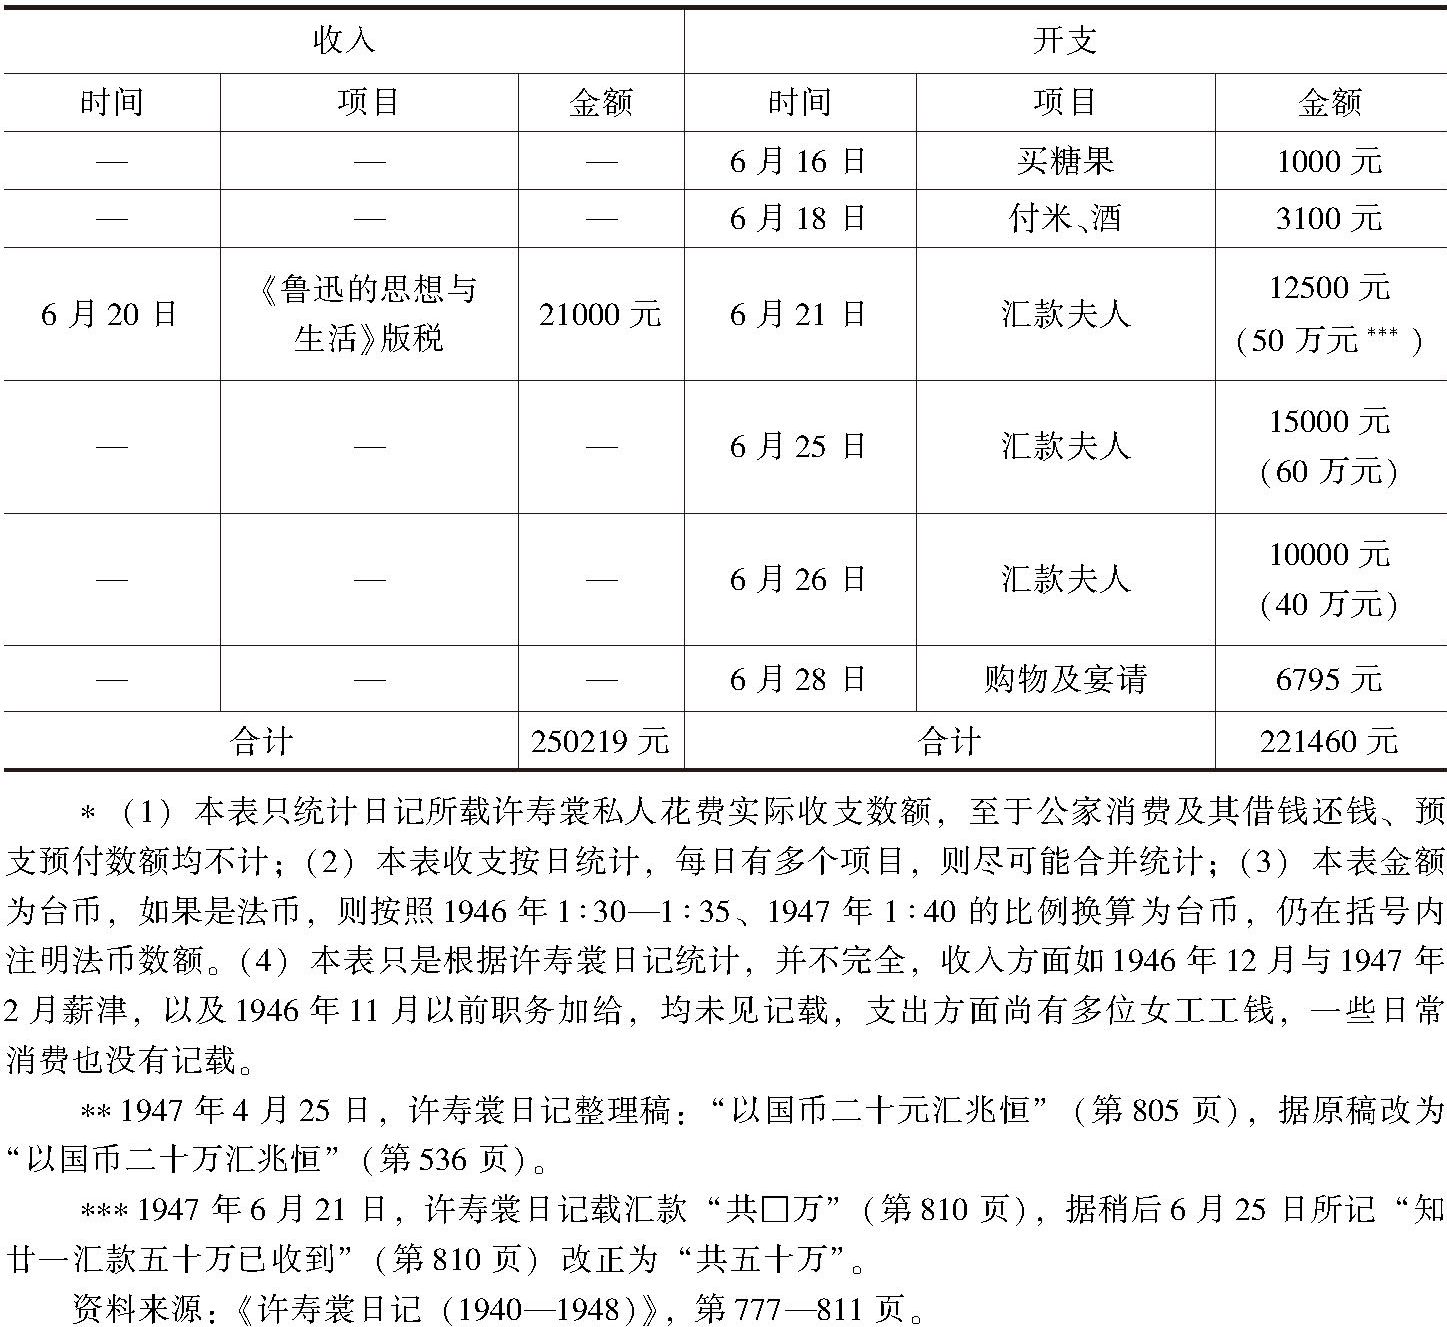 附录 1946年7月至1947年6月许寿裳生活账单明细表-续表3